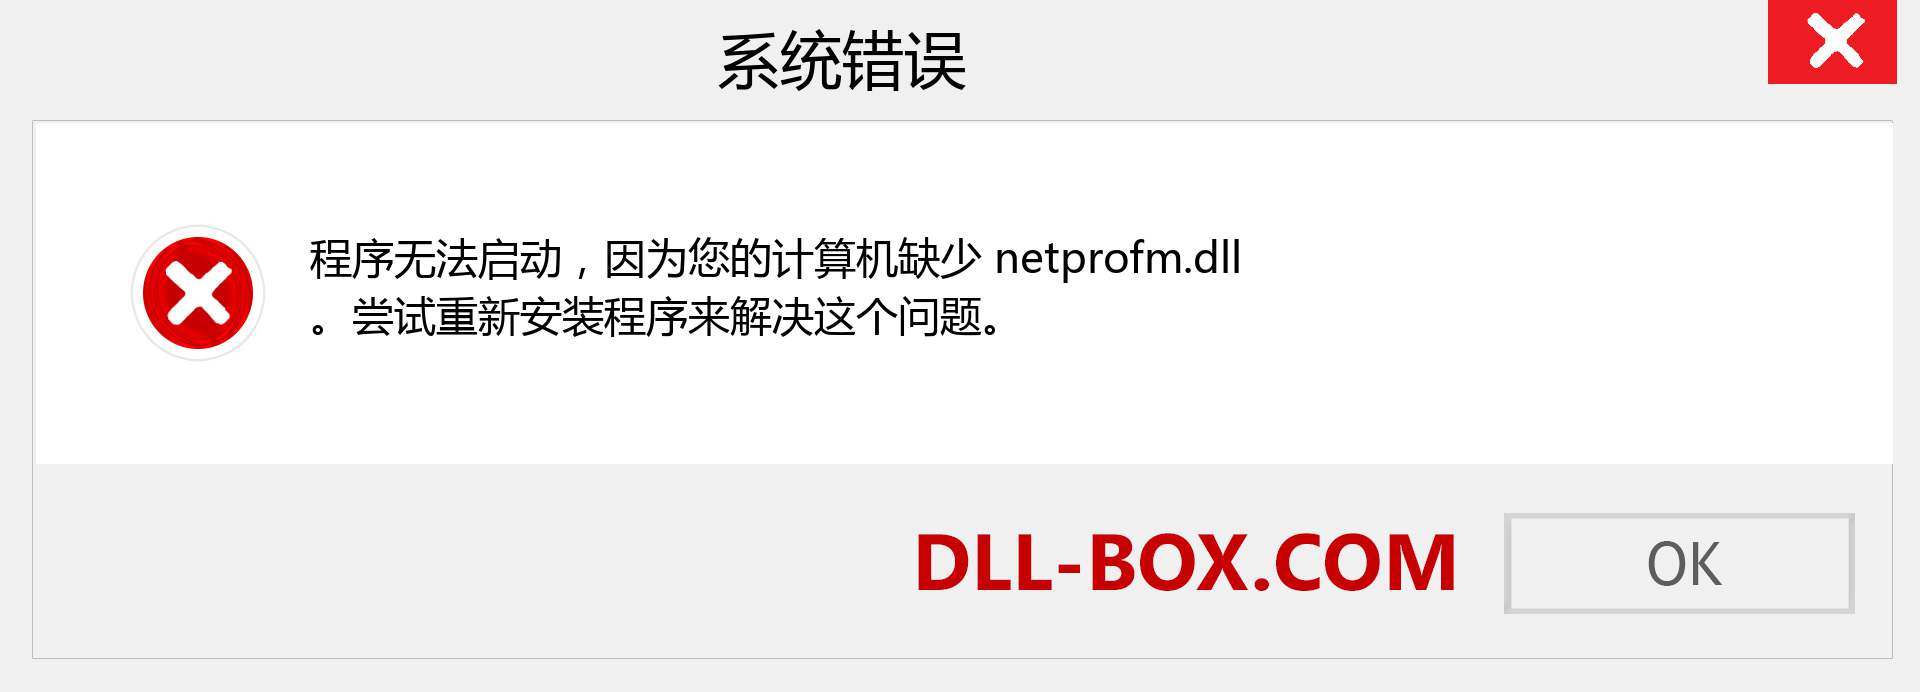 netprofm.dll 文件丢失？。 适用于 Windows 7、8、10 的下载 - 修复 Windows、照片、图像上的 netprofm dll 丢失错误